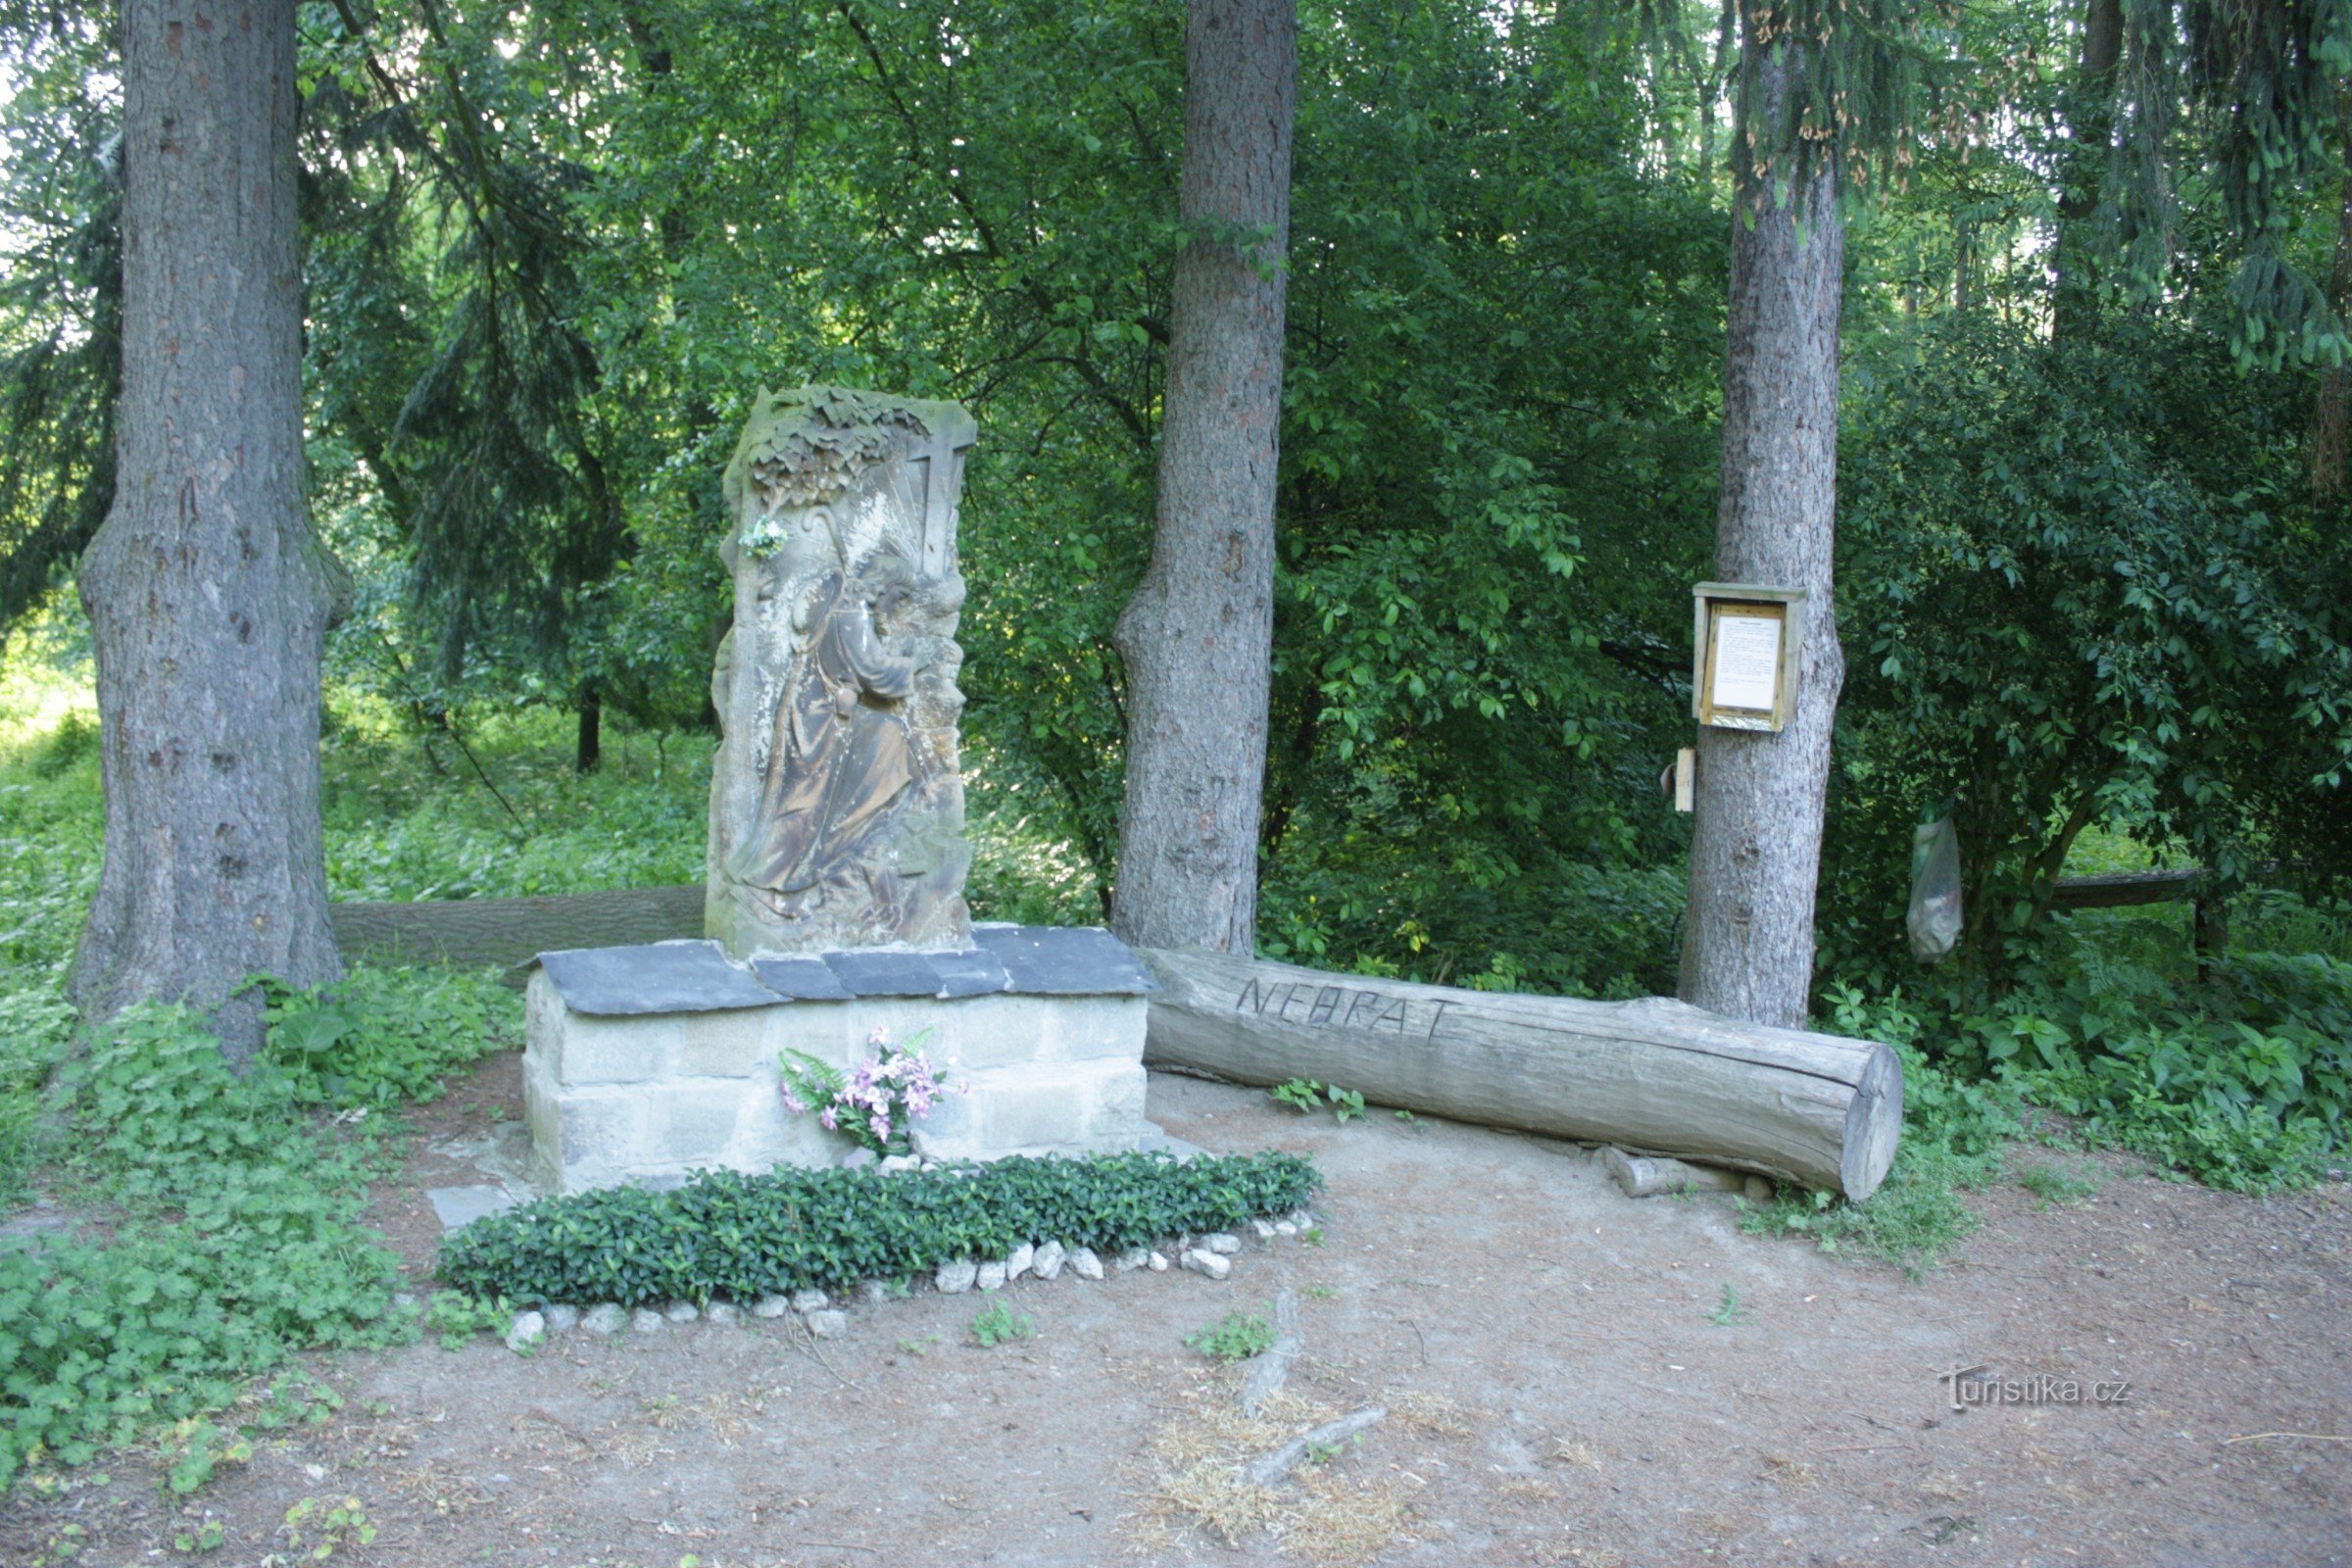 Stenrelief av St. Jakub i översvämningsskogen nära Kojetín